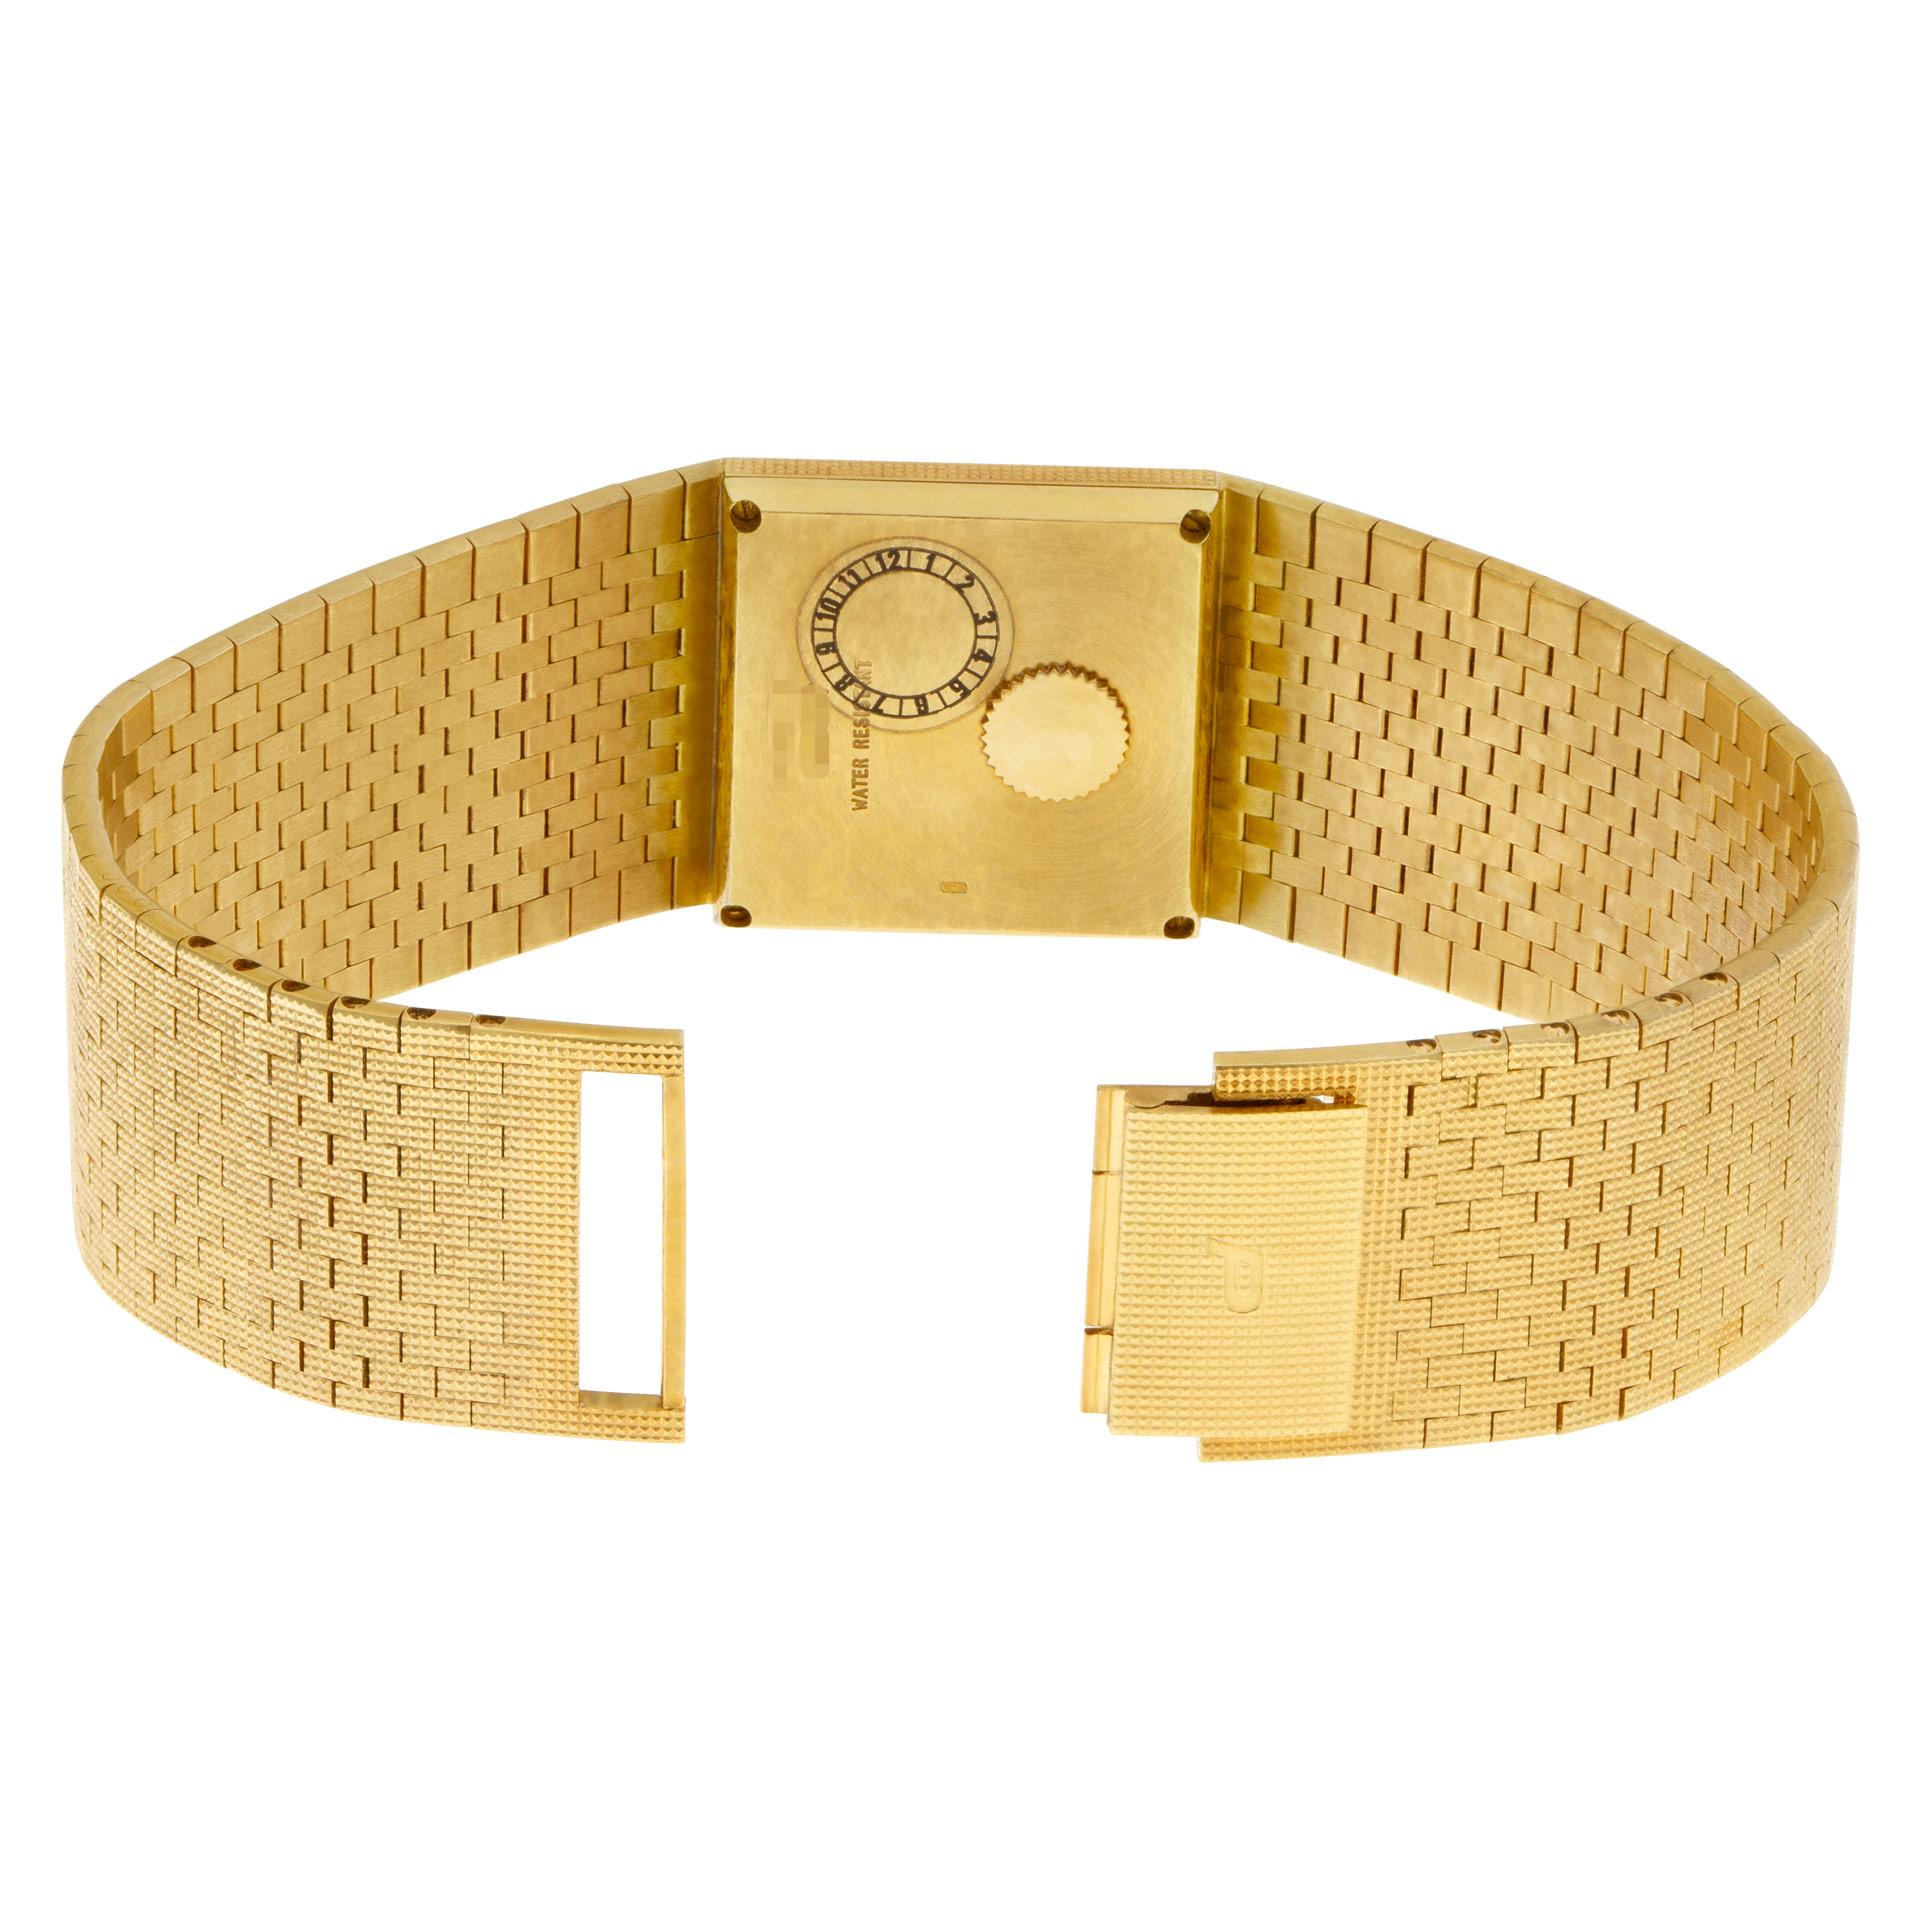  Piaget Polo en or jaune 18 carats avec bracelet jonc intégré Unisexe 